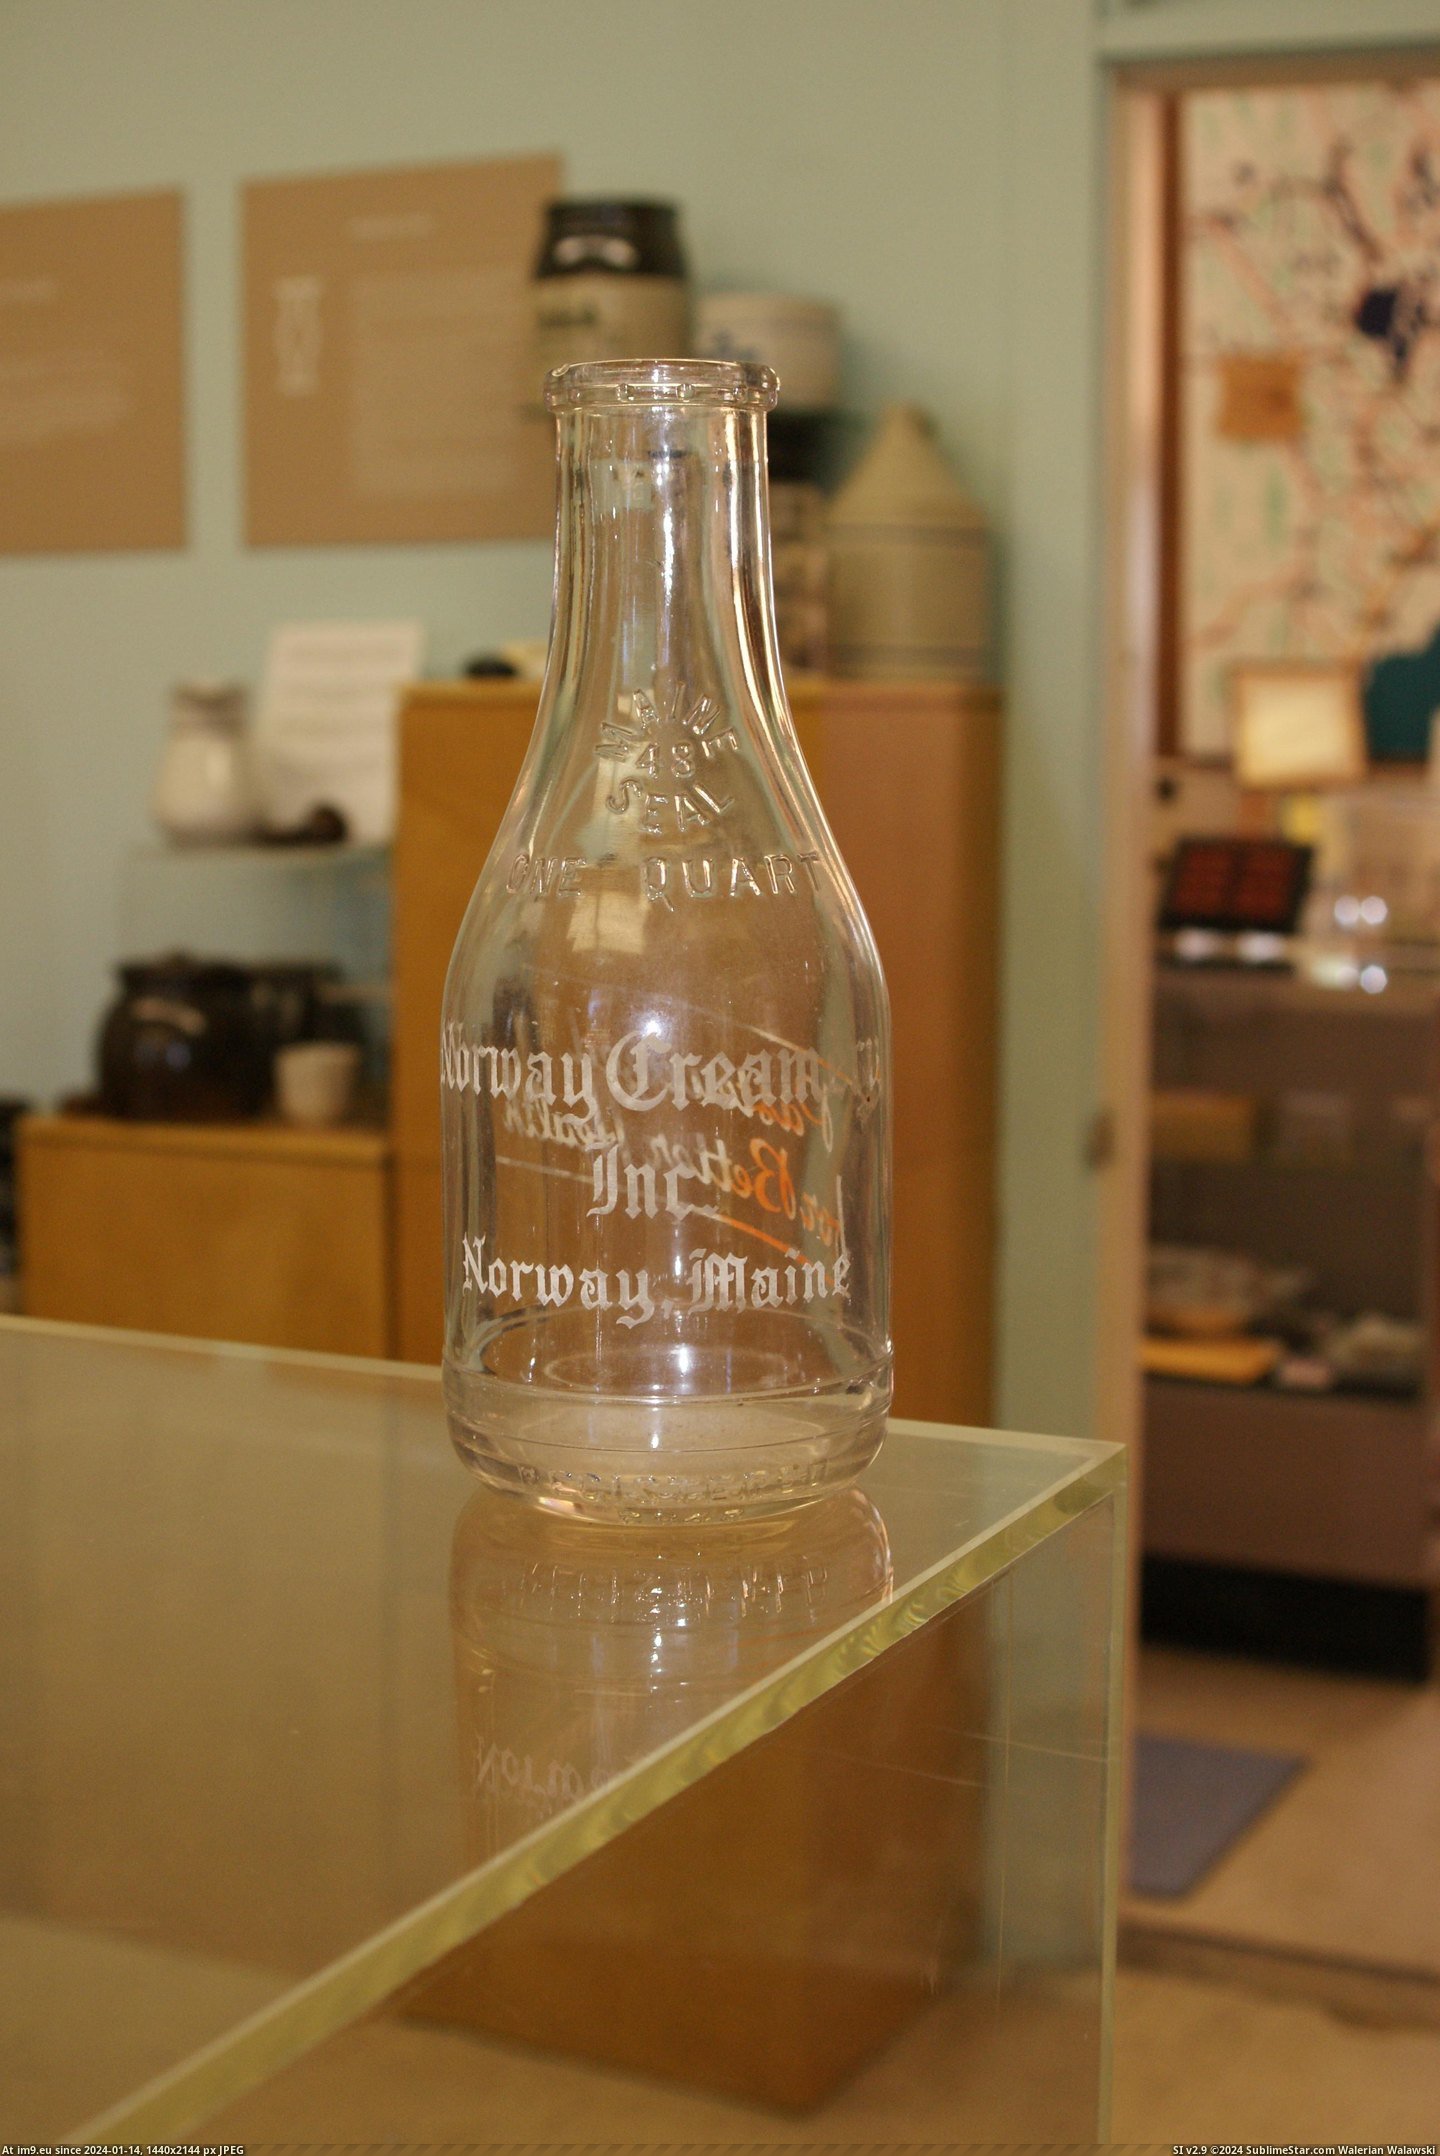 #Museum #Maine #Naples #Bottle MAINE BOTTLE MUSEUM NAPLES (33) Pic. (Изображение из альбом MAINE BOTTLE MUSEUM))